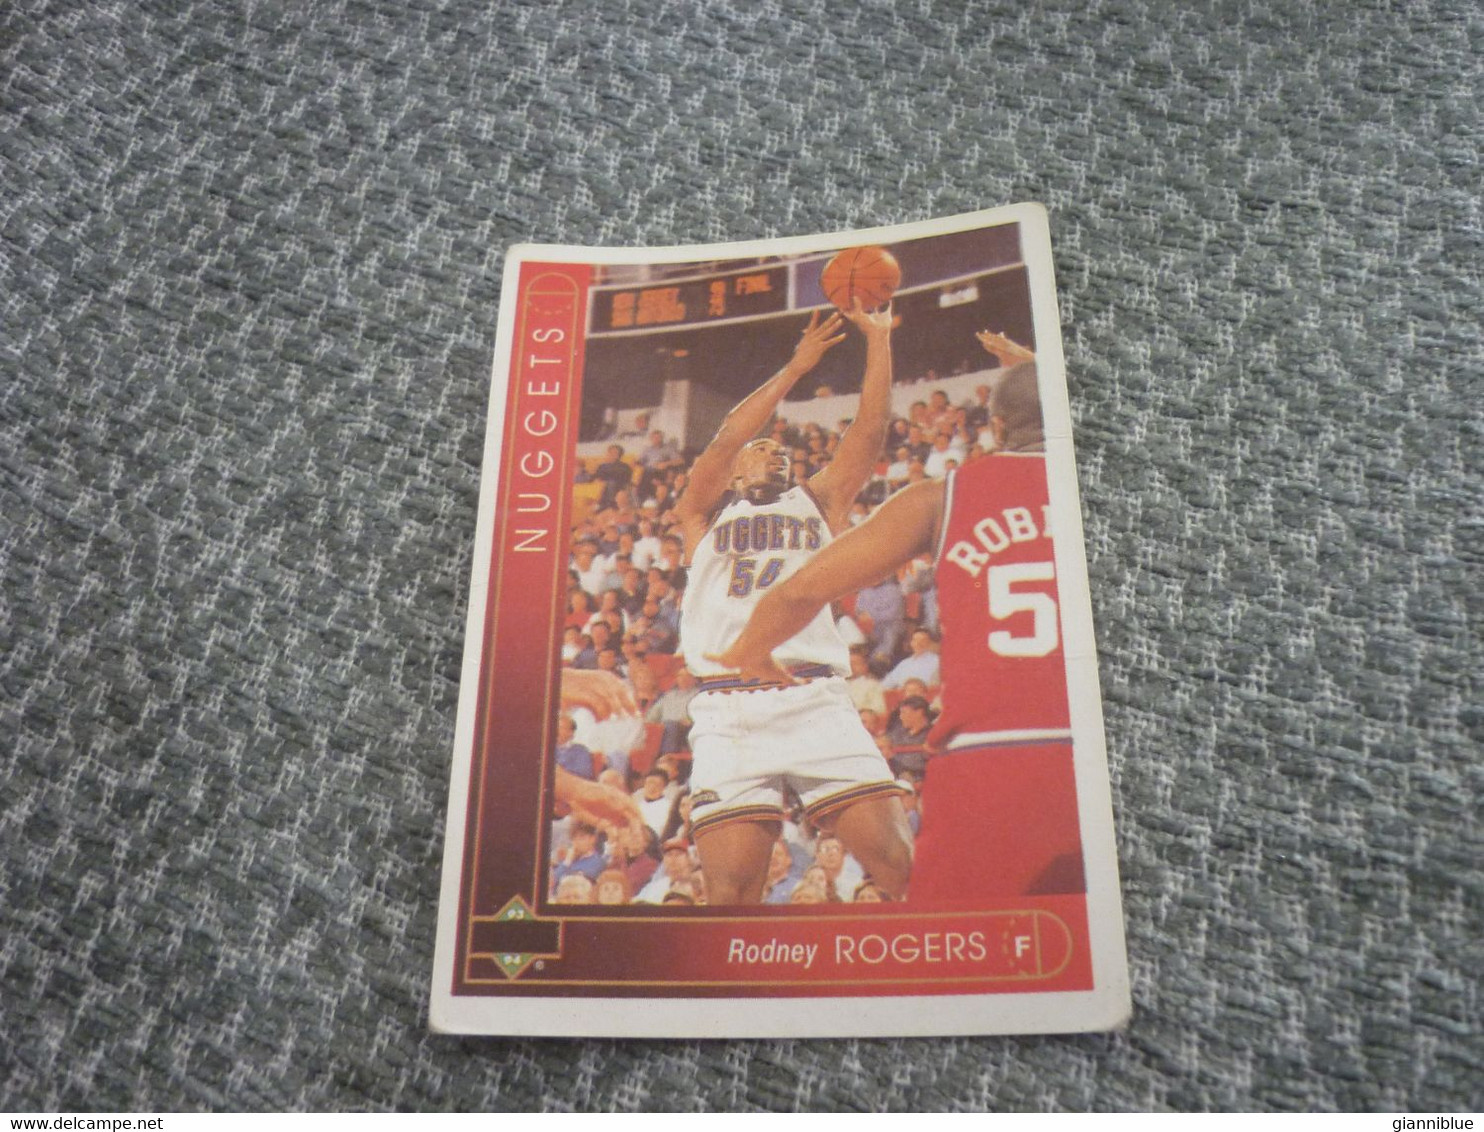 Rodney Rogers Denver Nuggets Basket Basketball '90s Rare Greek Edition Card - 1990-1999